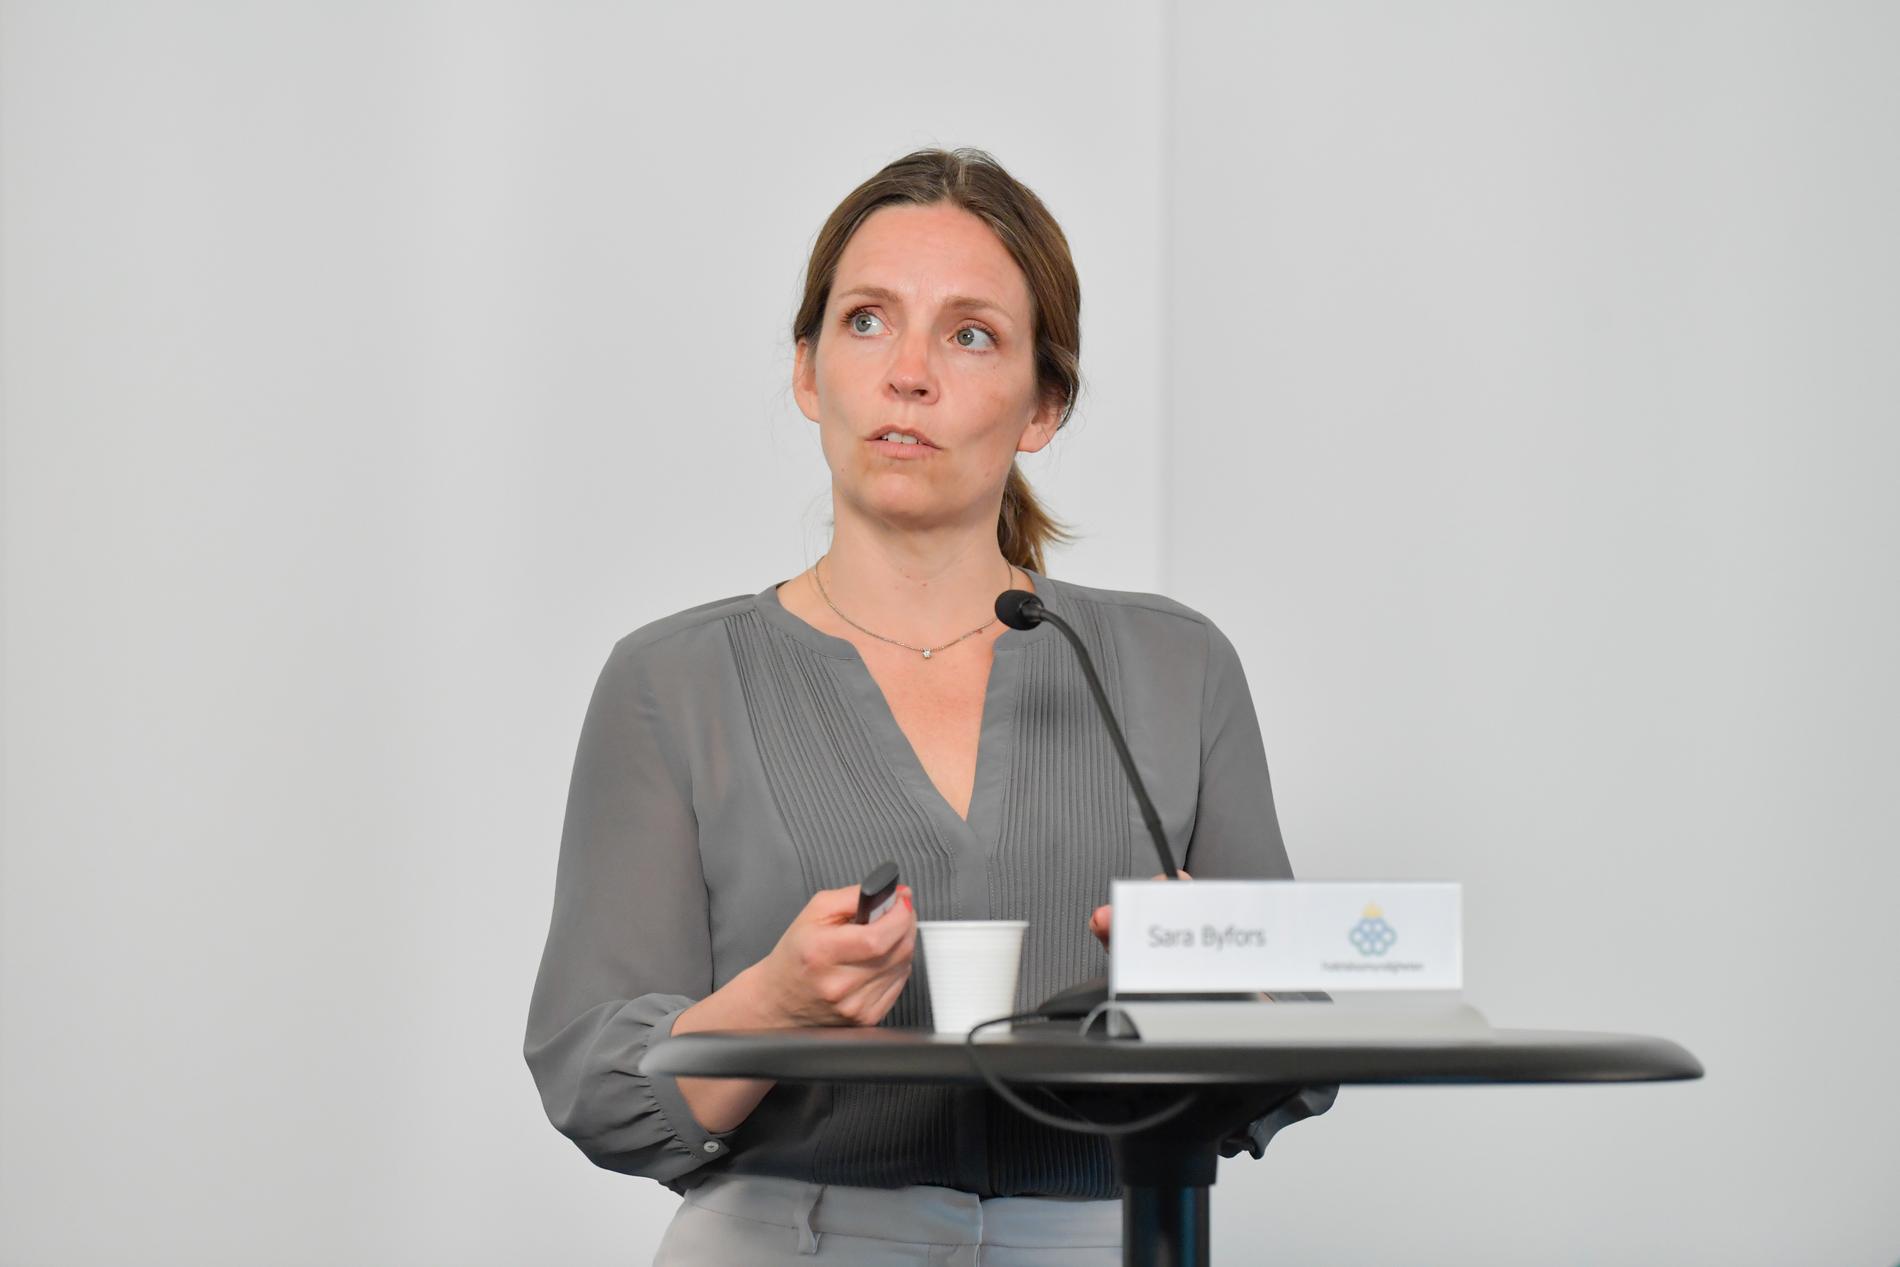 Folkhälsomyndigheten skärper råden i fler regioner. Sara Byfors, enhetschef, Folkhälsomyndigheten. Arkivbild